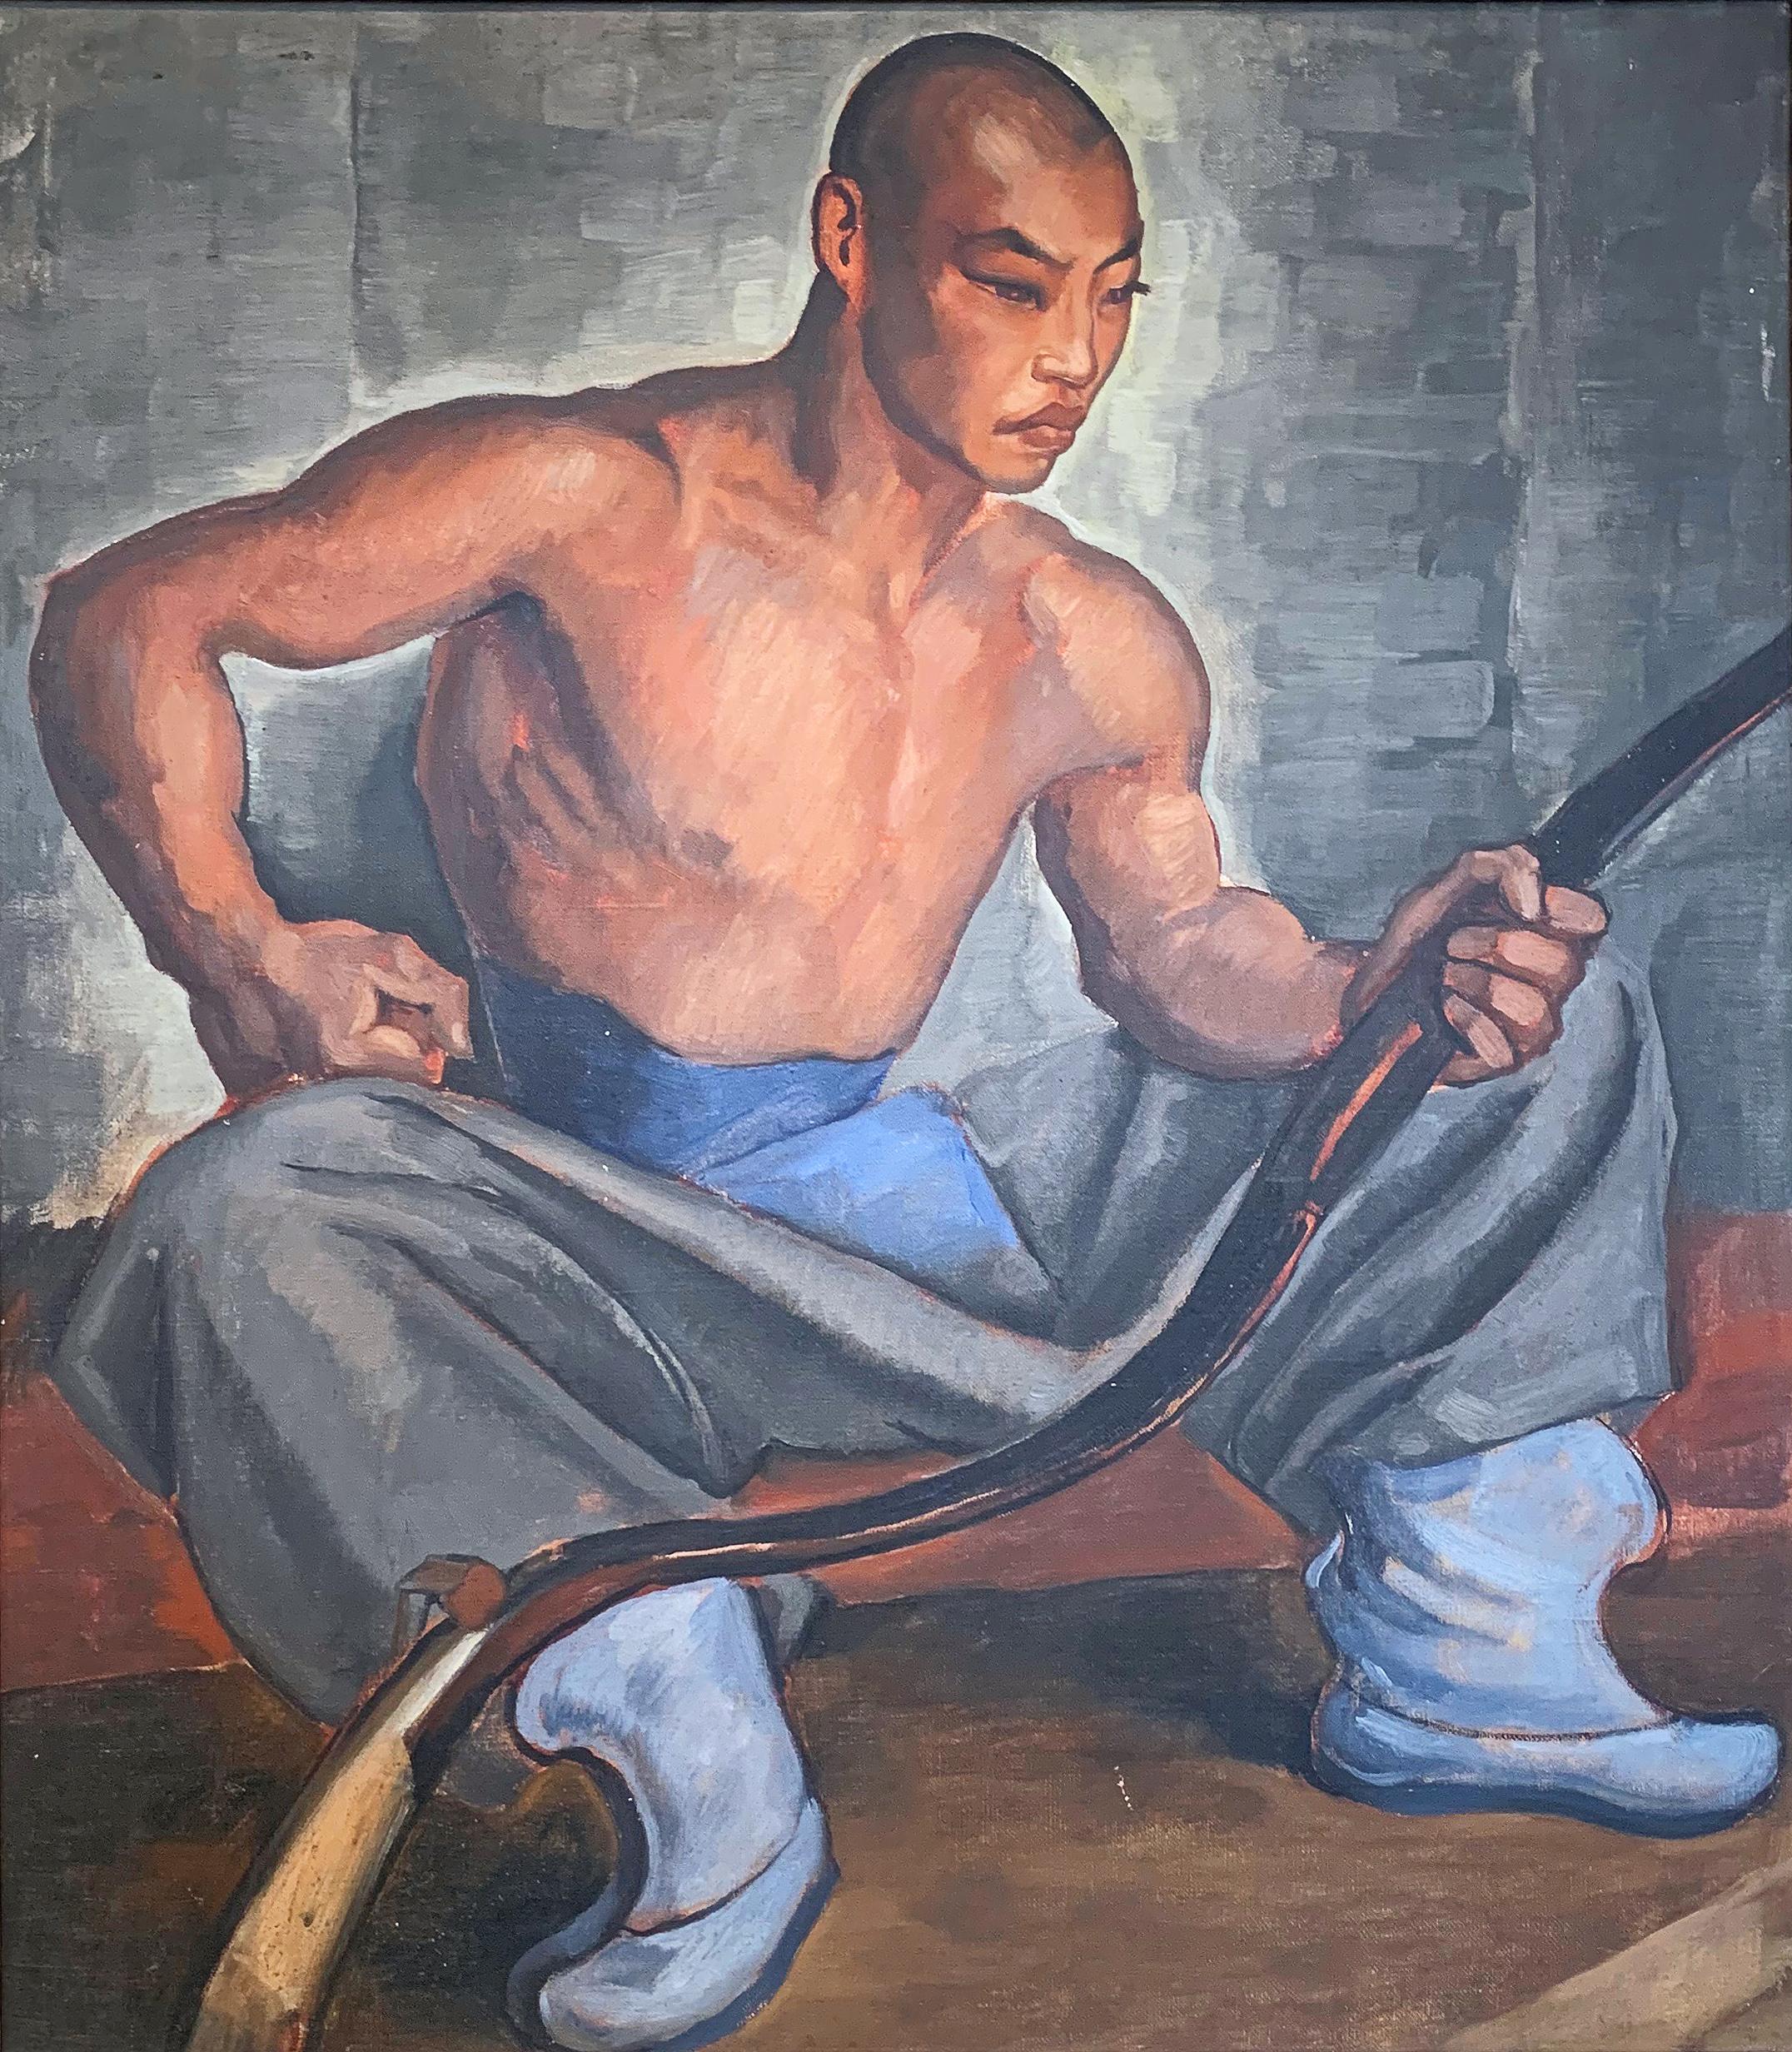 Peinte de façon dramatique et vivante, cette représentation d'un archer assis d'origine asiatique, tenant son arc d'une main, est un exemple classique de portrait de l'époque de la dépression. La posture contemplative du personnage, les magnifiques